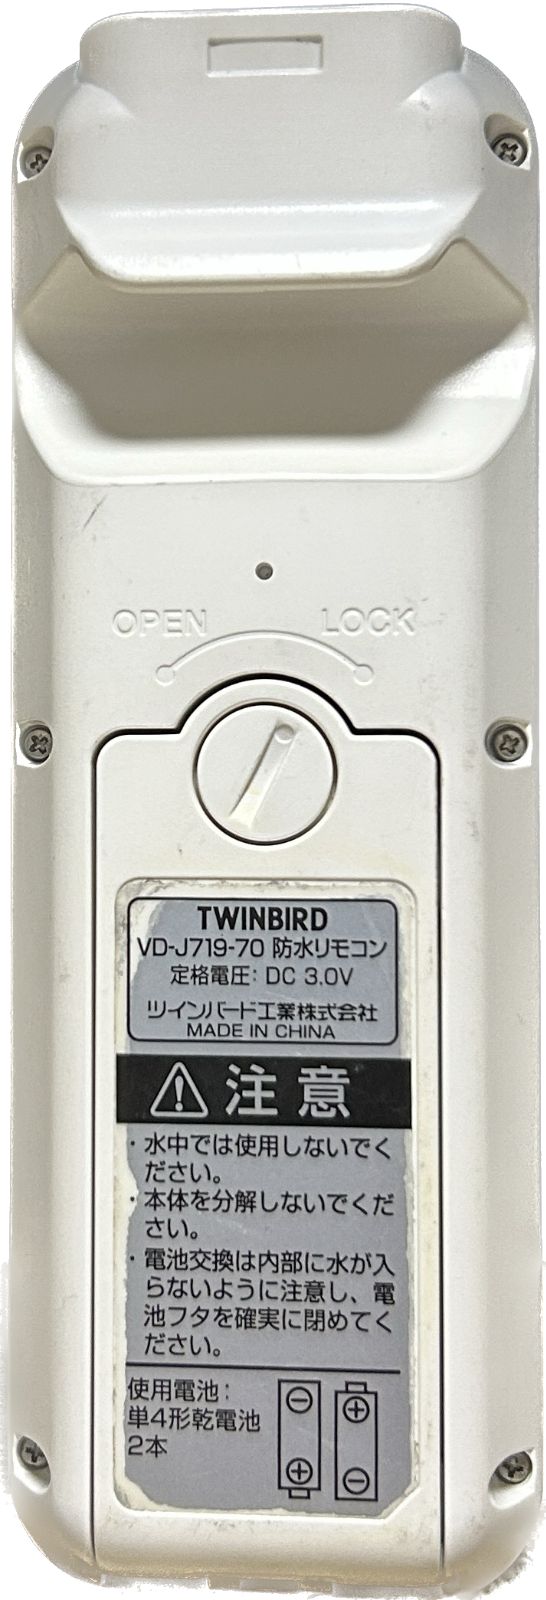 TWINBIRD DVD ZABADY 防水リモコン VD-J719-70 ツインバード - メルカリ